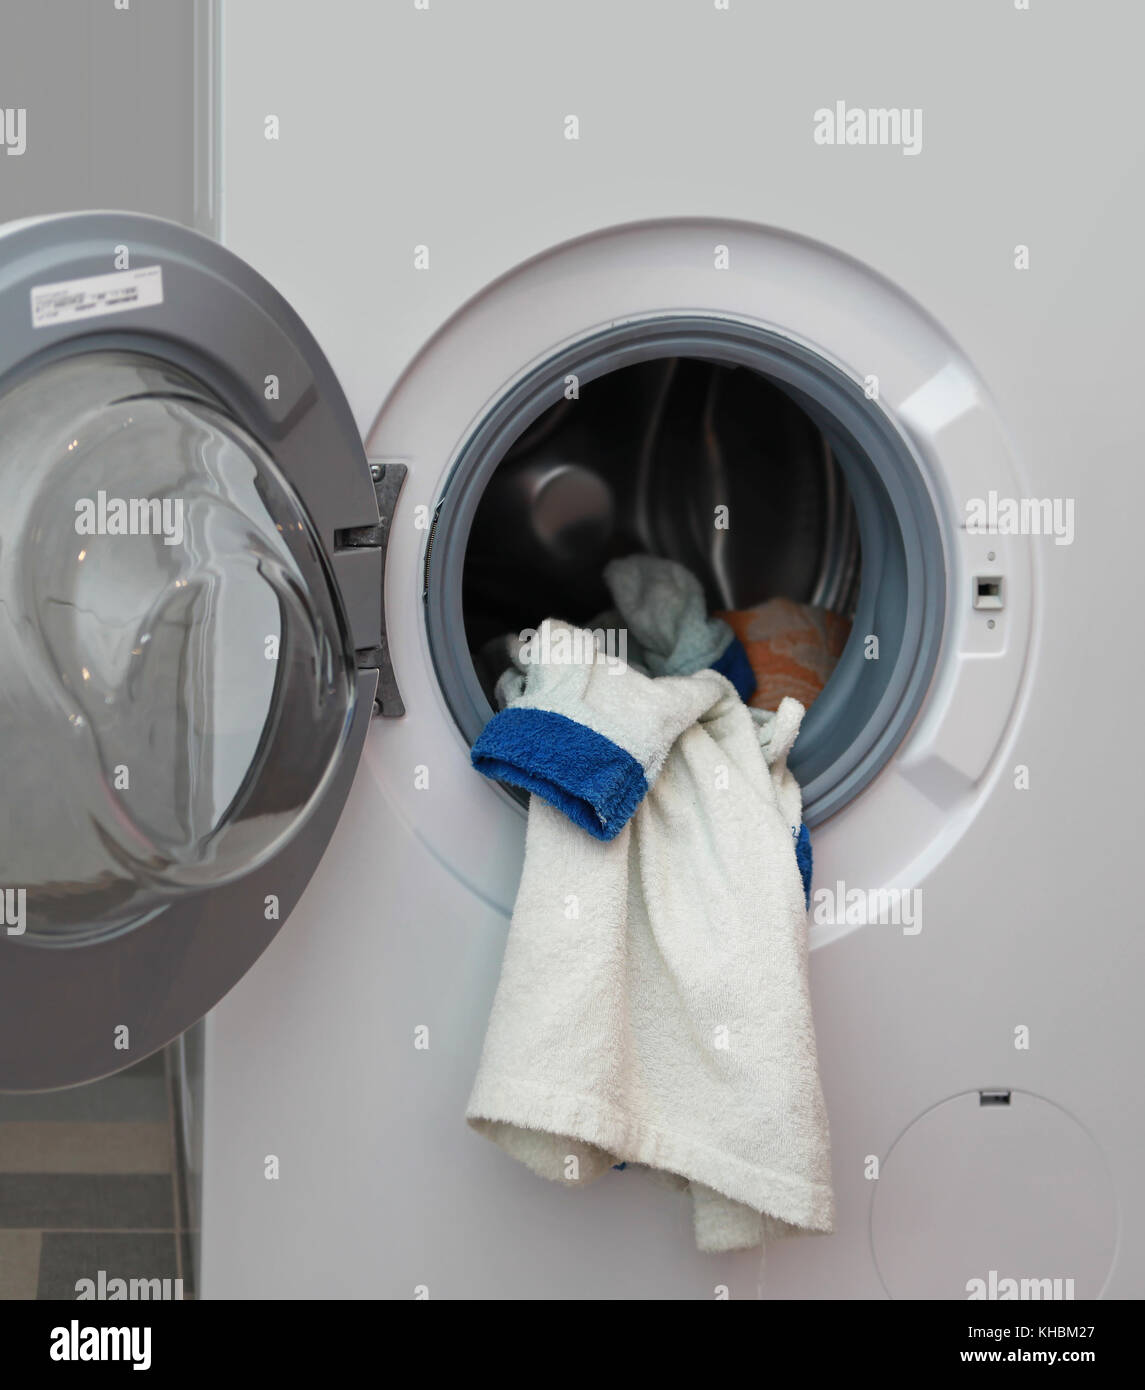 Robe blanche dans la machine à laver Banque D'Images